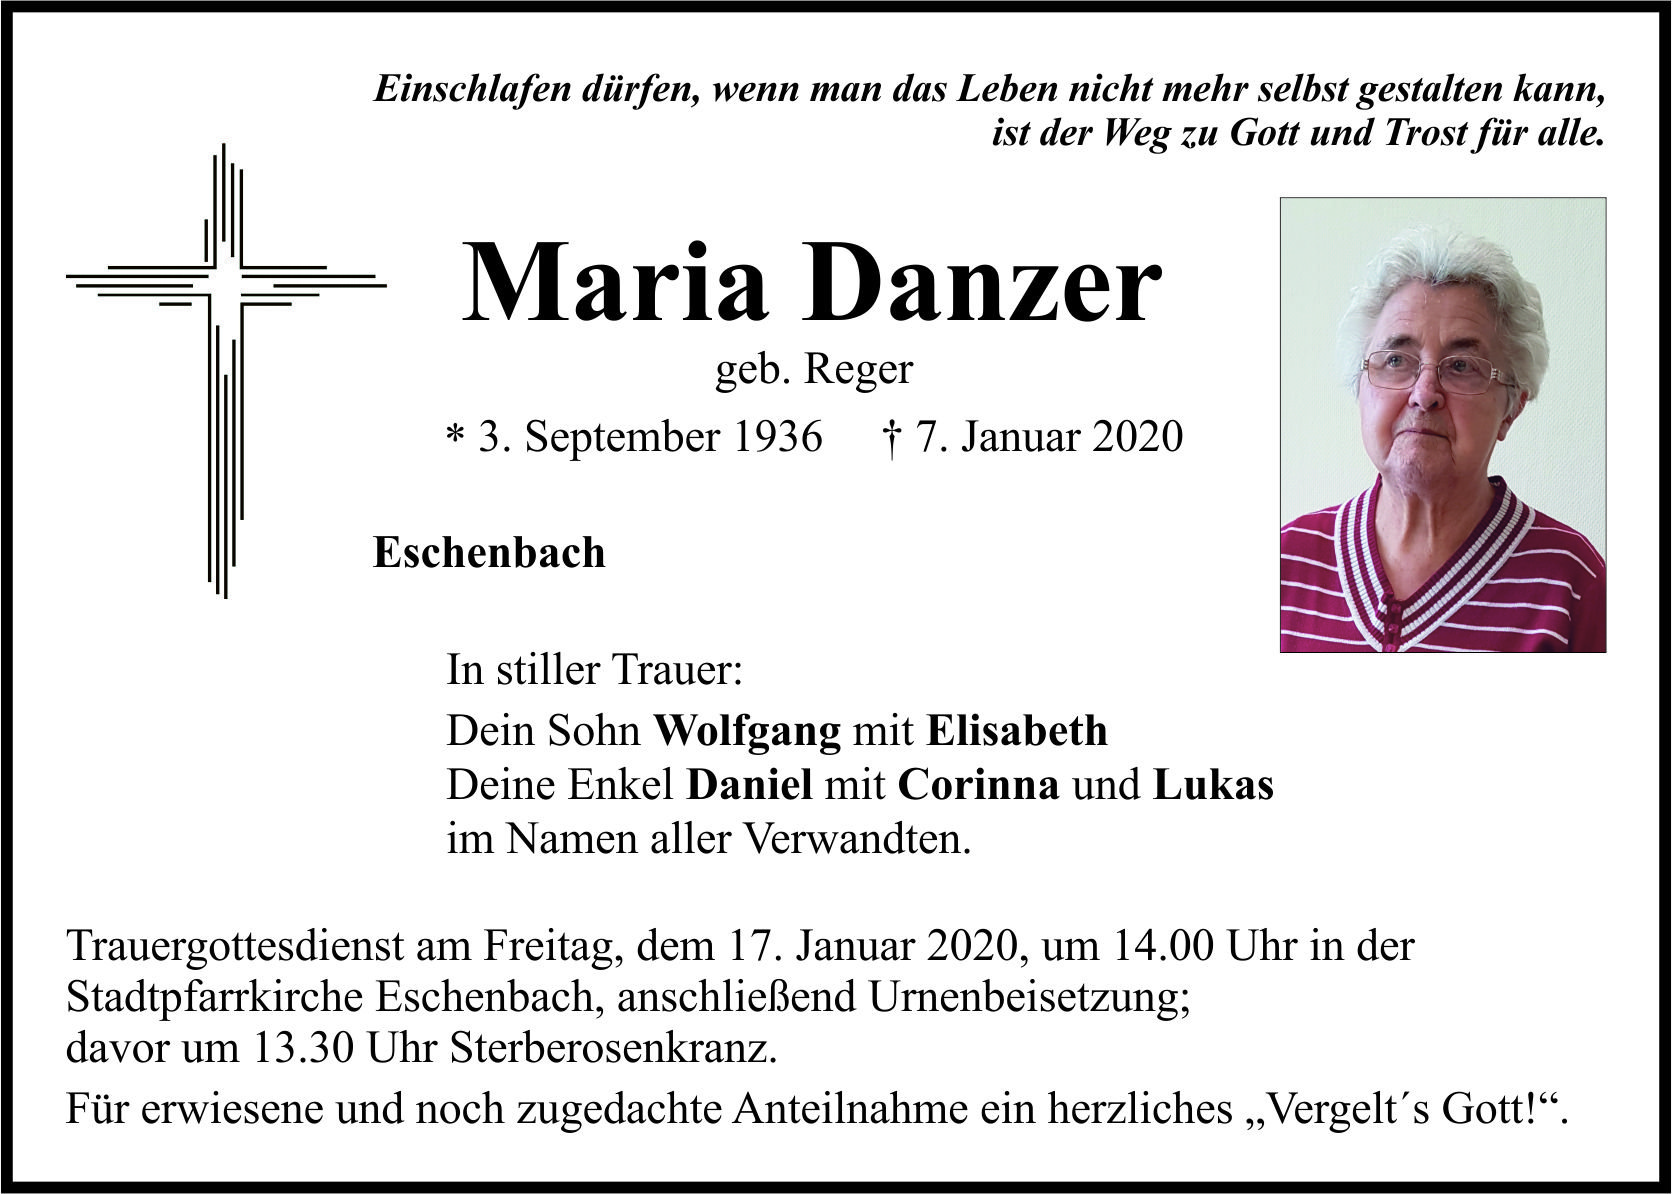 Traueranzeige Maria Danzer, Eschenbach